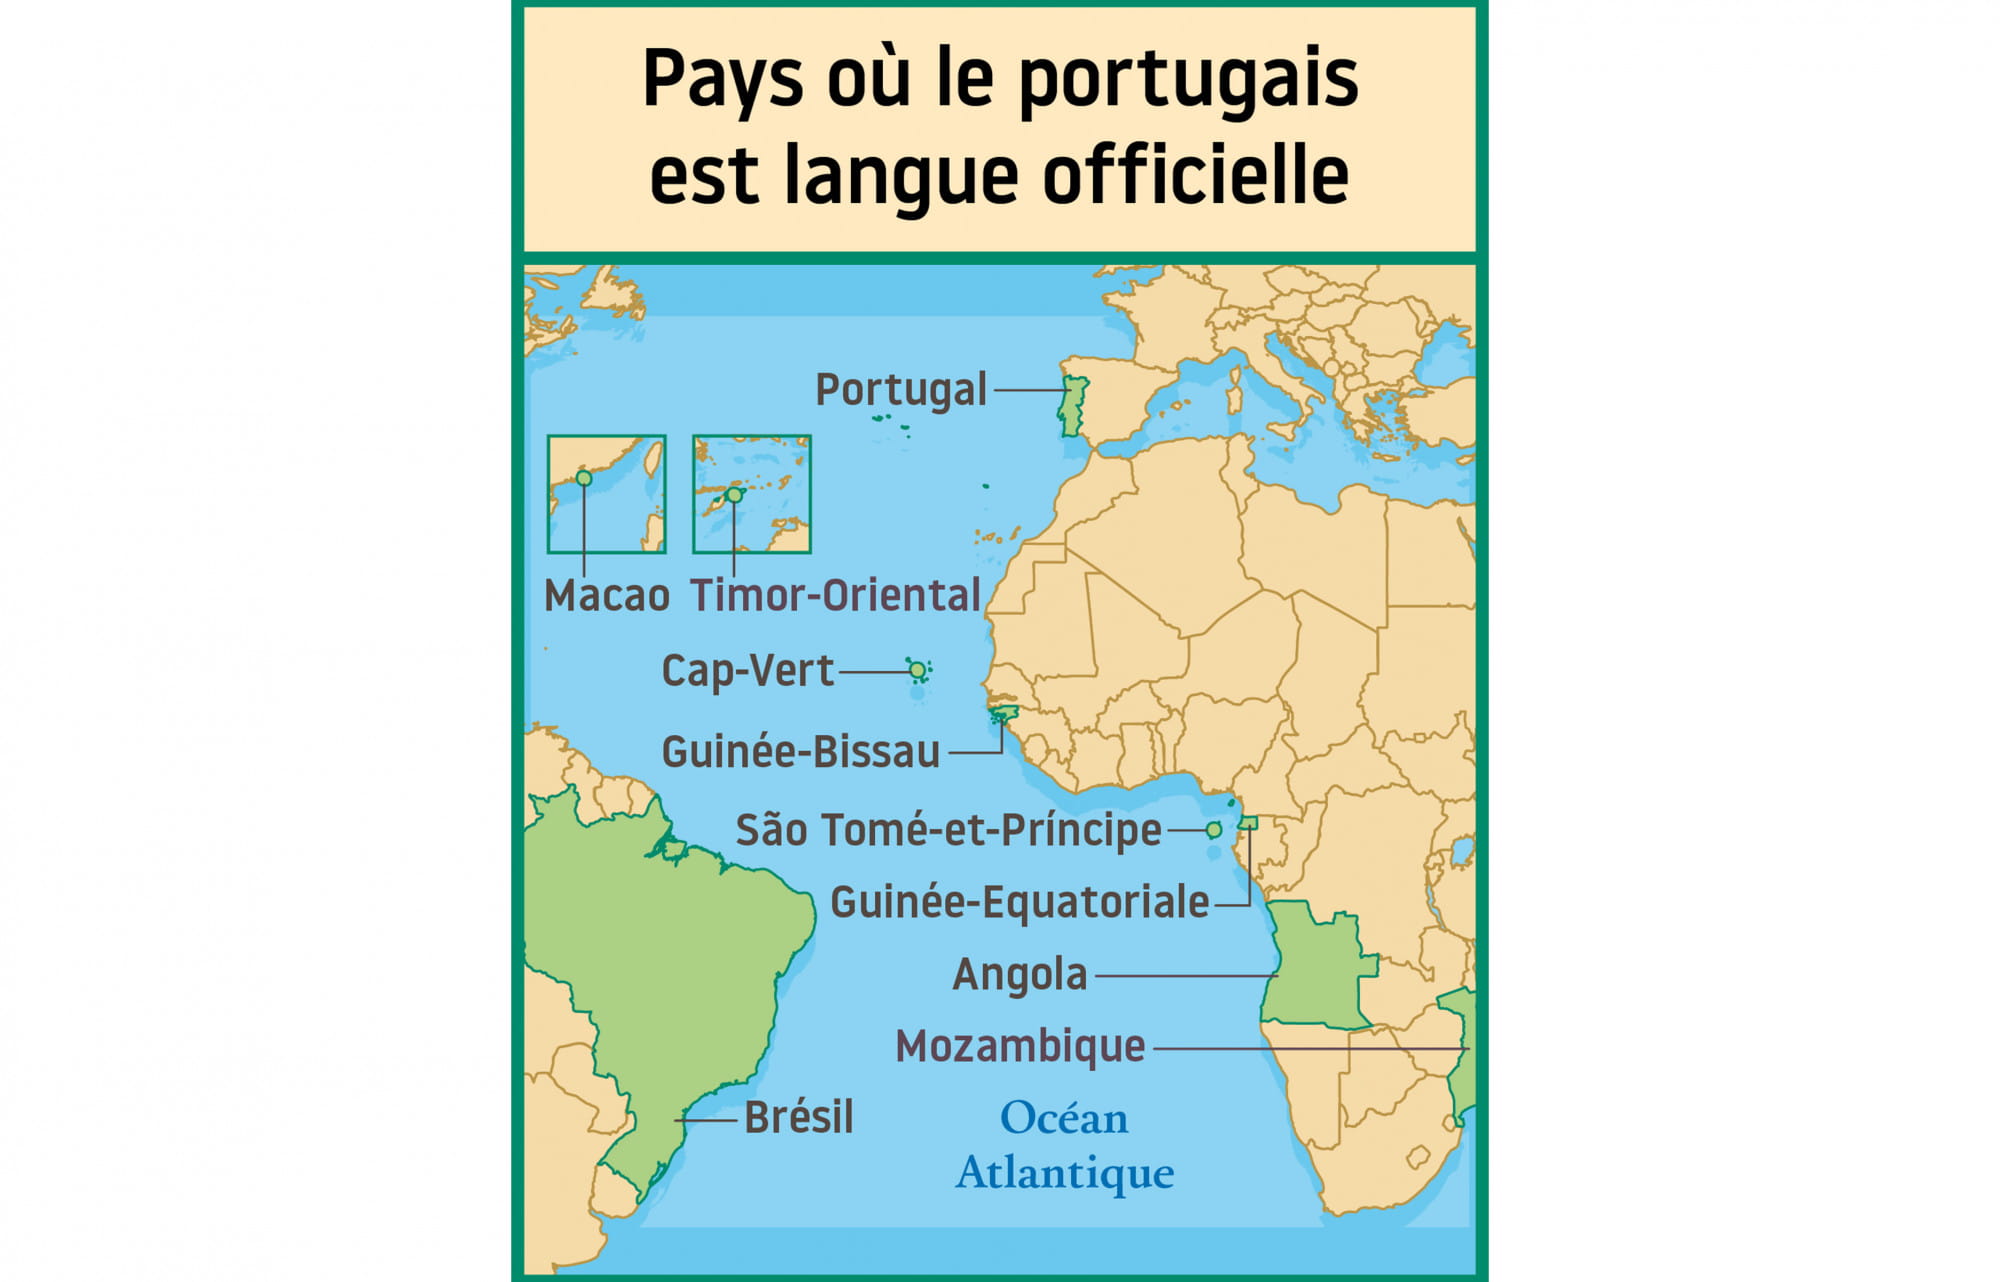 Pays où le portugais est la langue officielle.